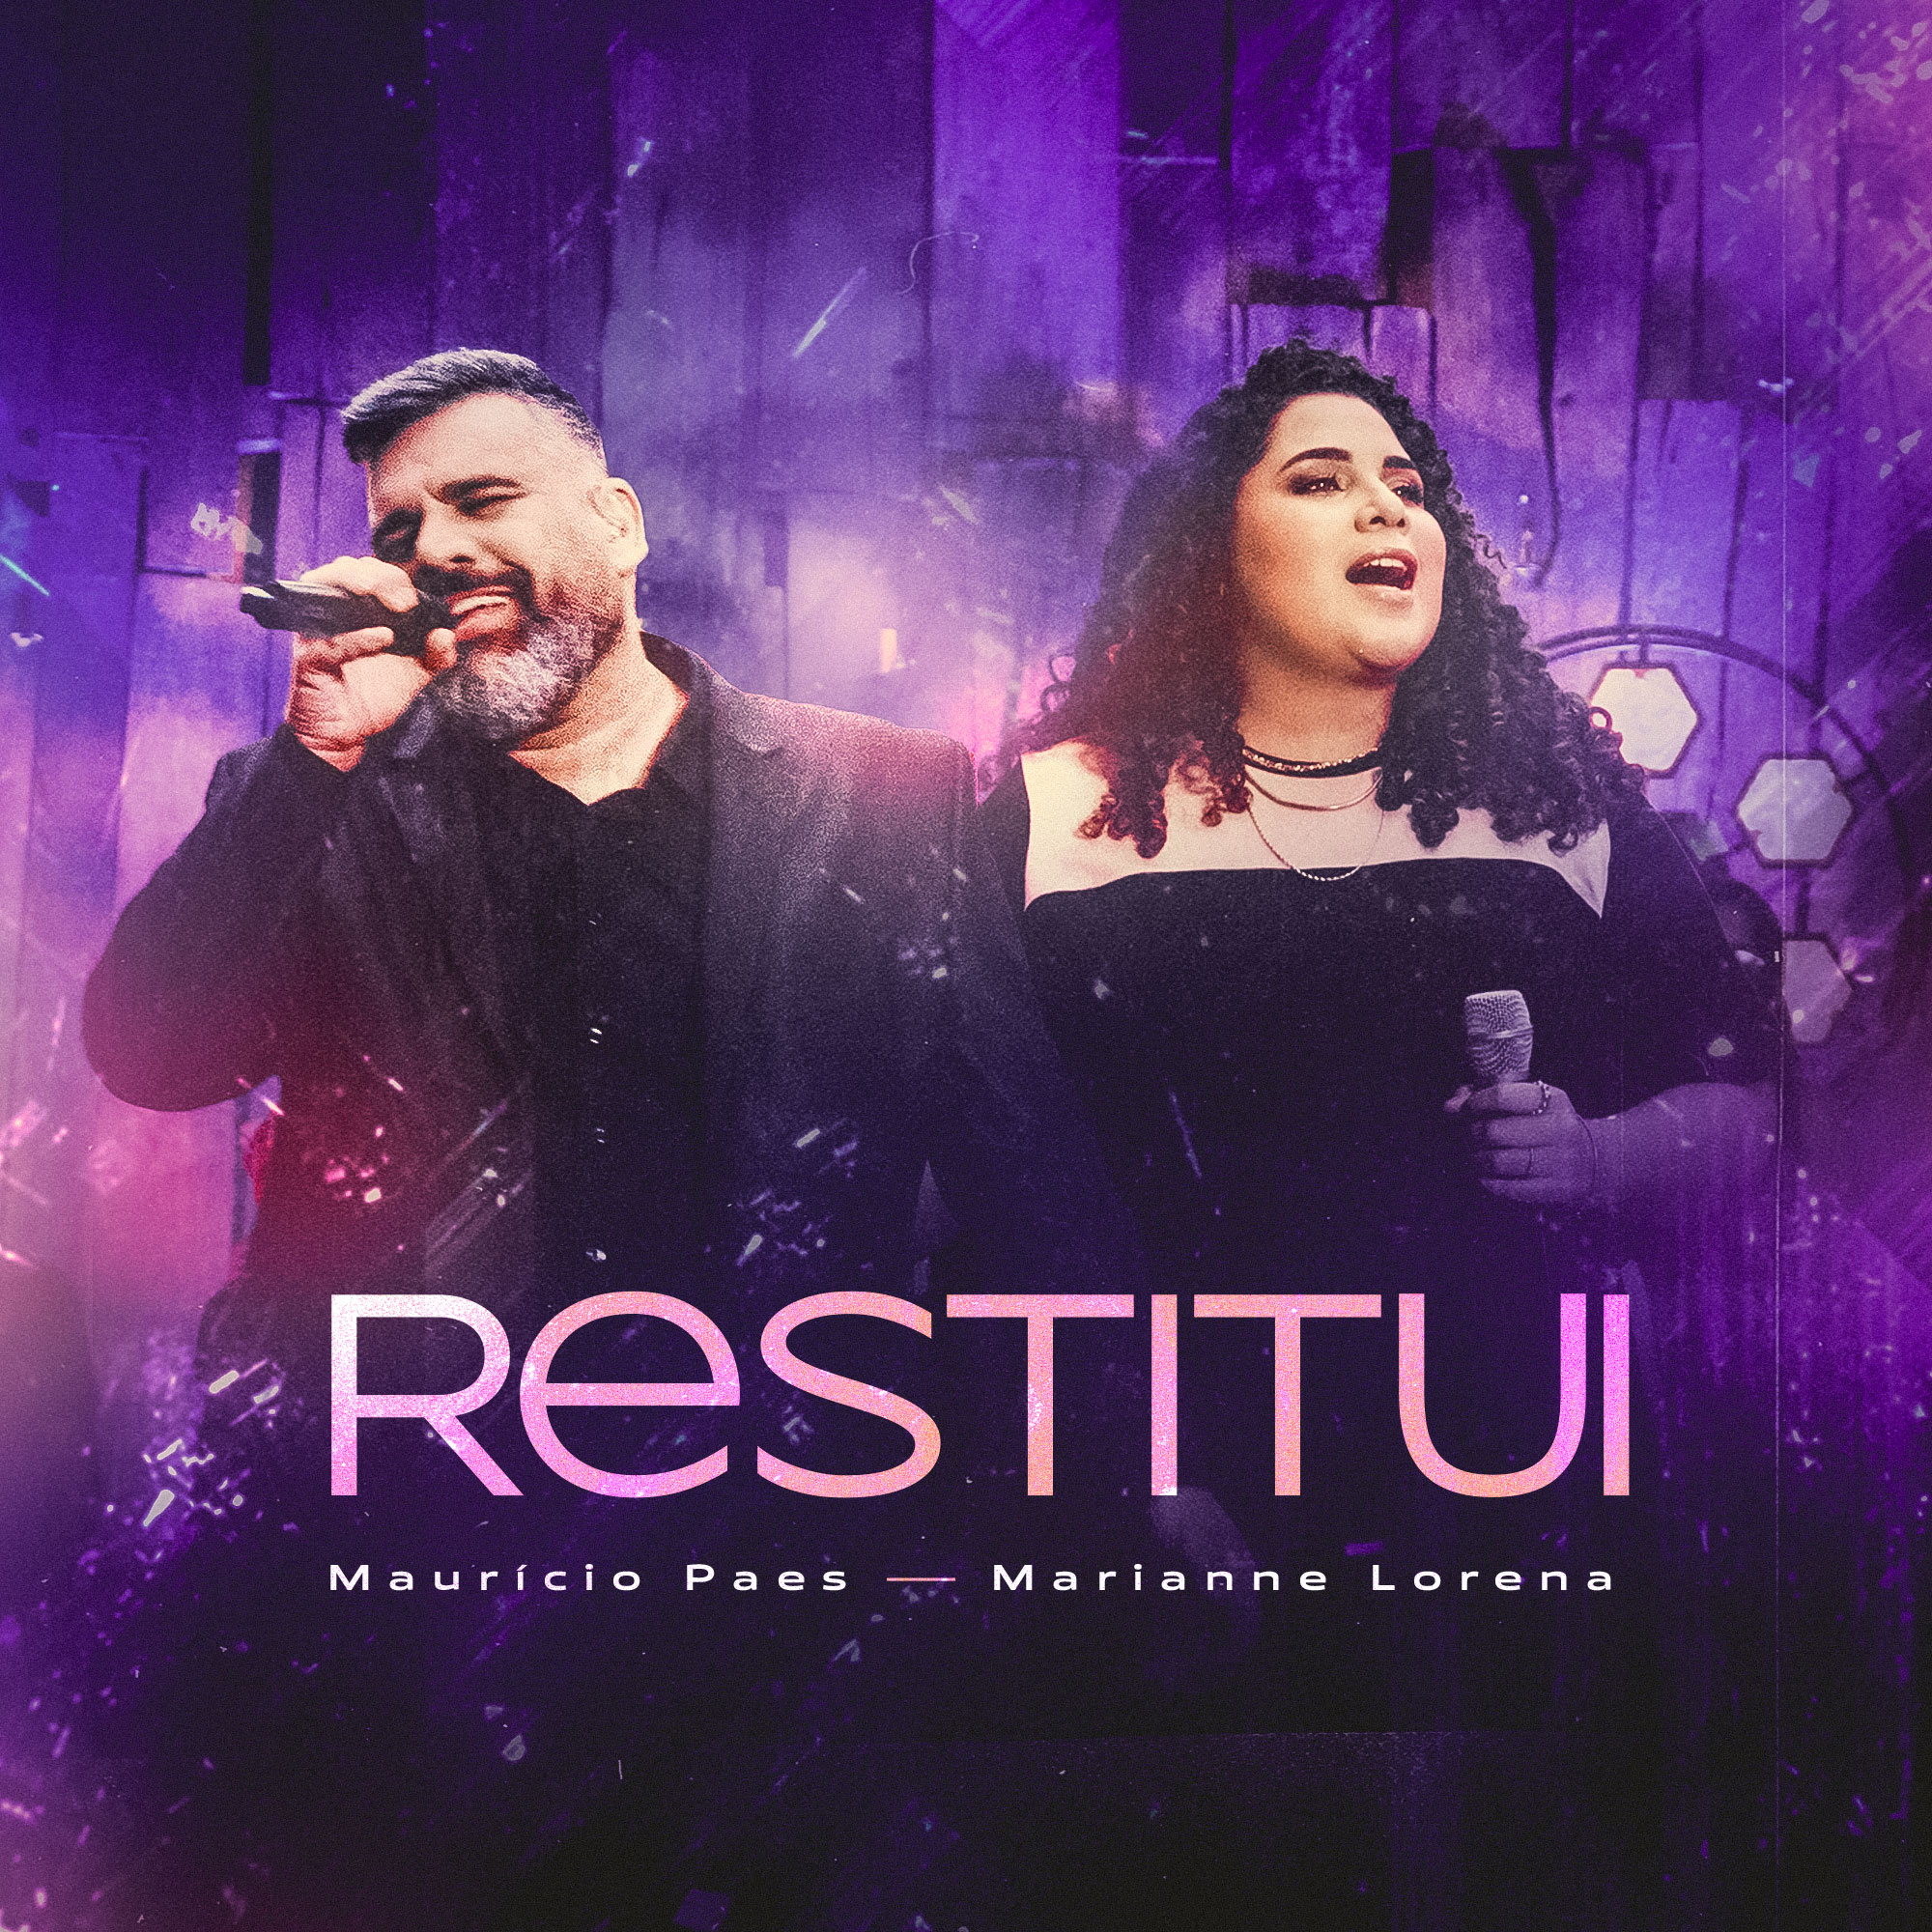 Maurício Paes lança versão de “Restitui”, em collab com sua filha, Marianne Lorena